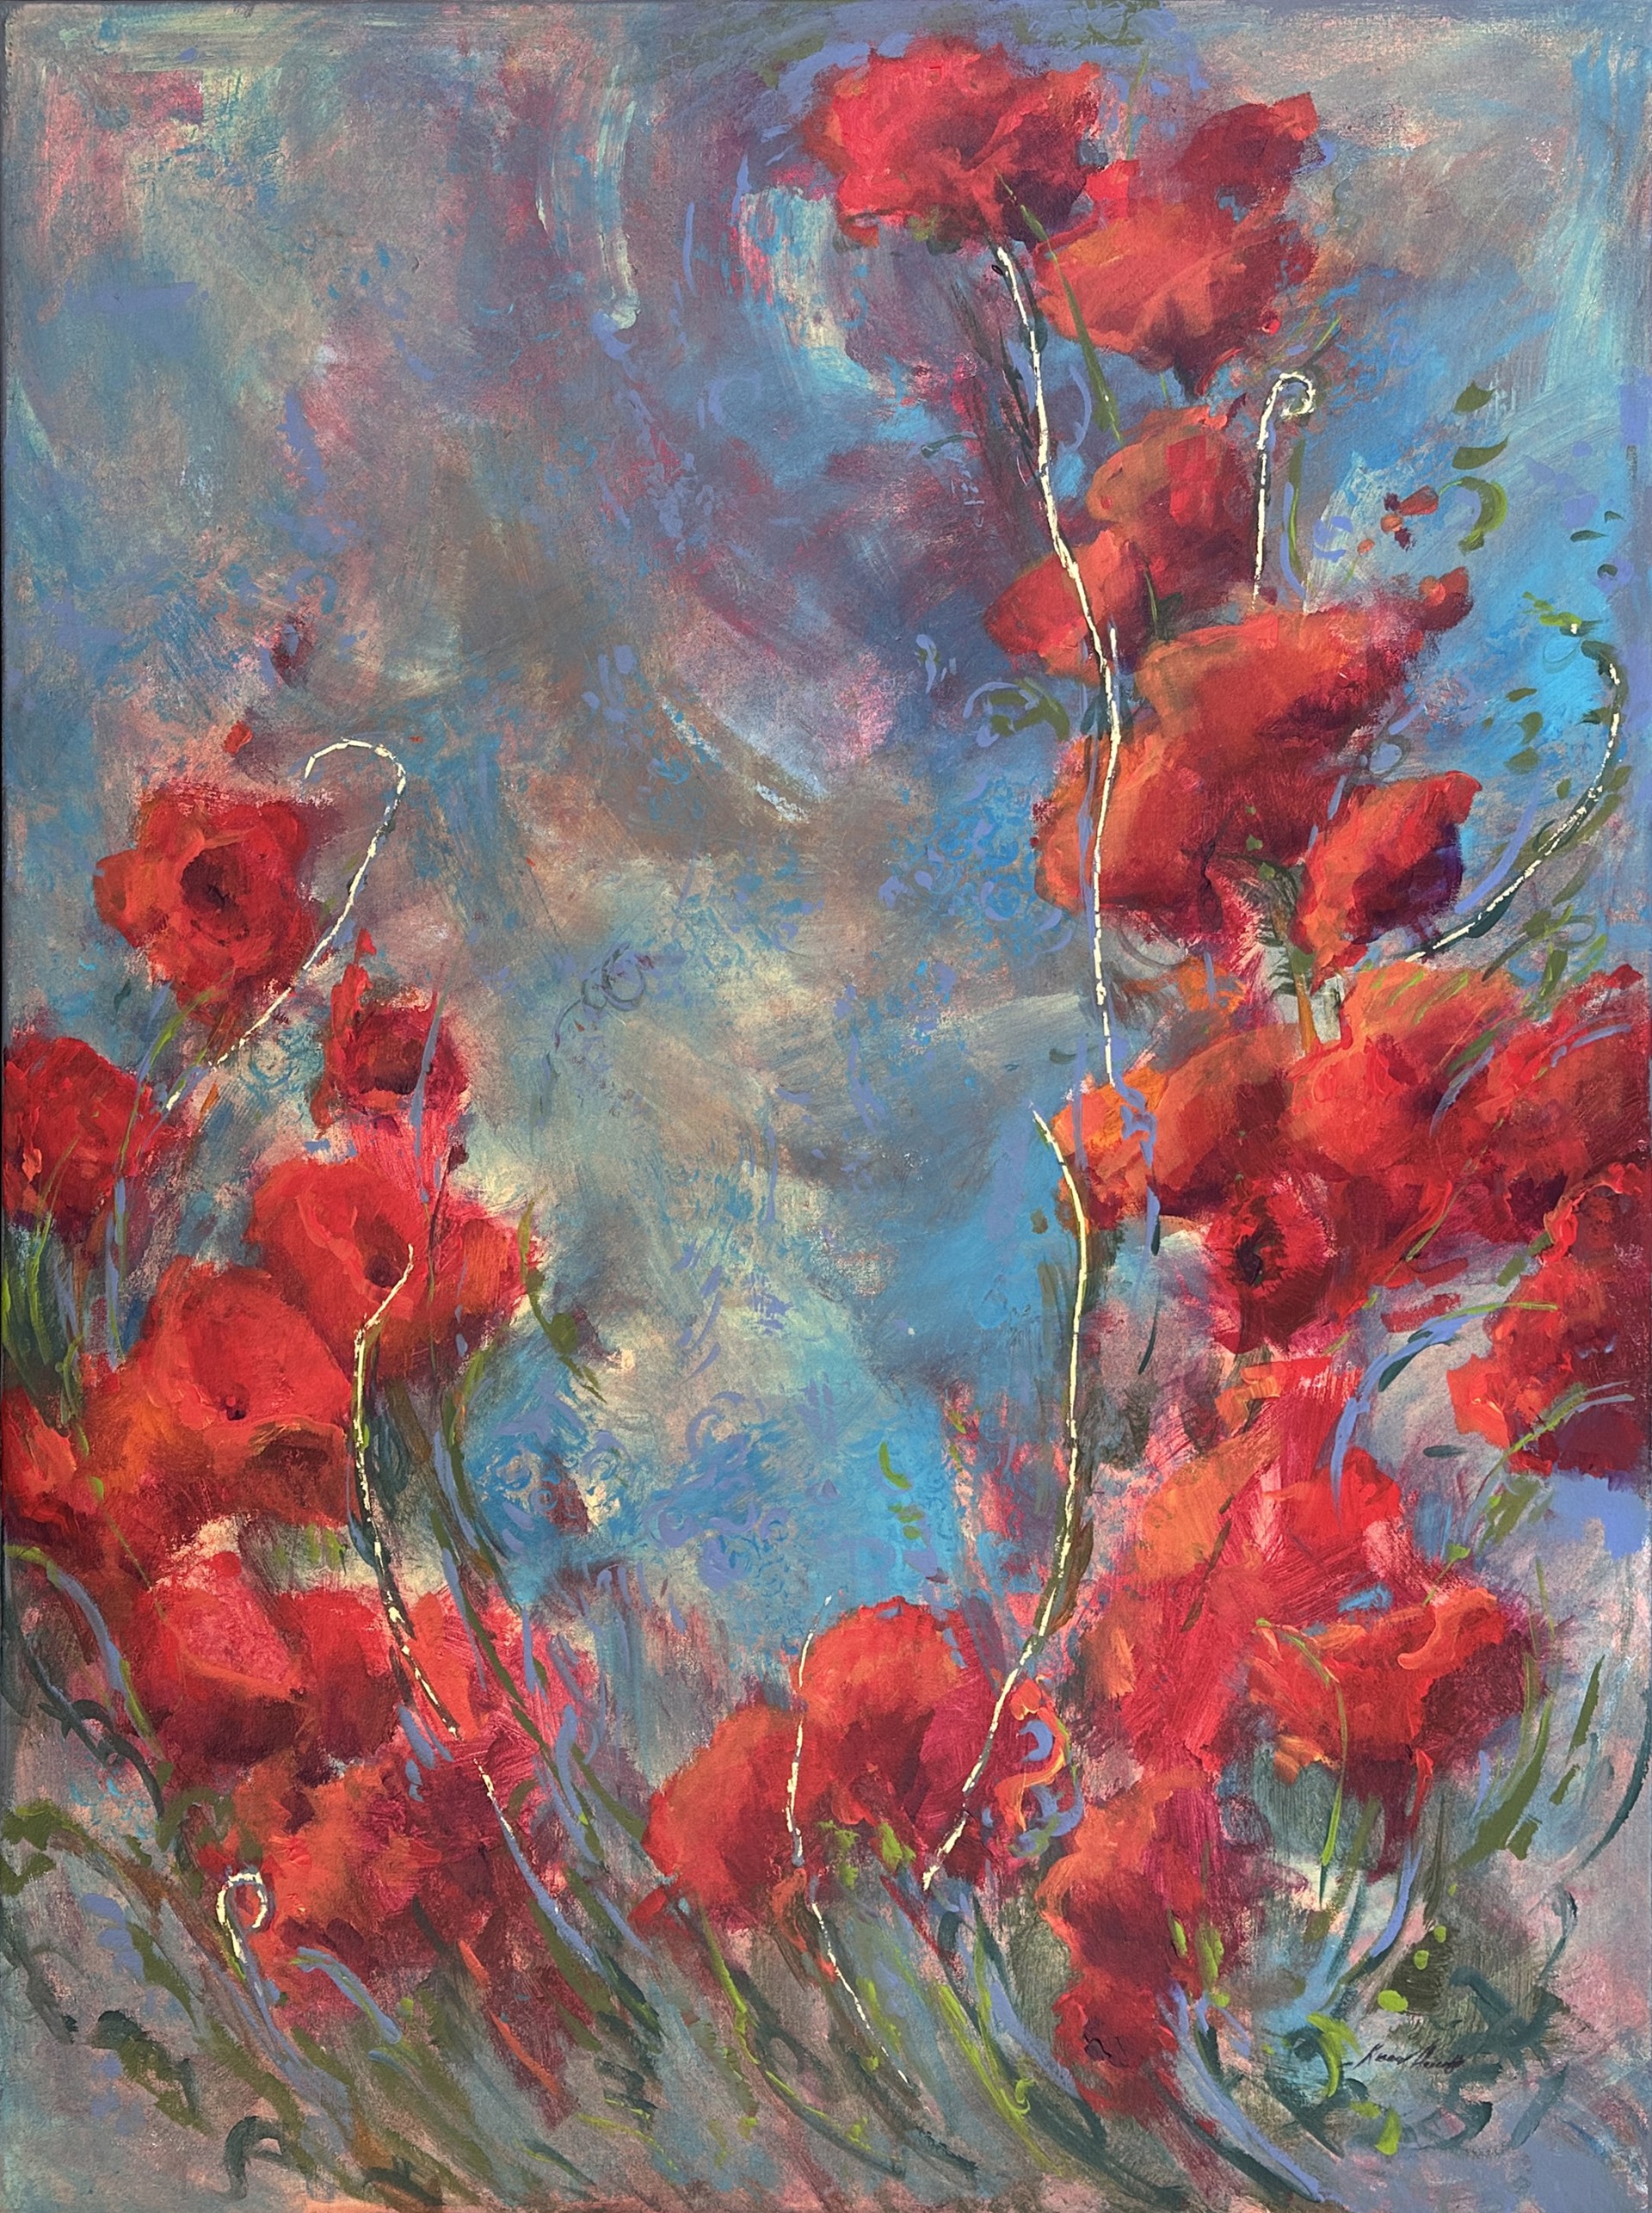 Coming Home (Italian Poppies) by Karen Hewitt Hagan